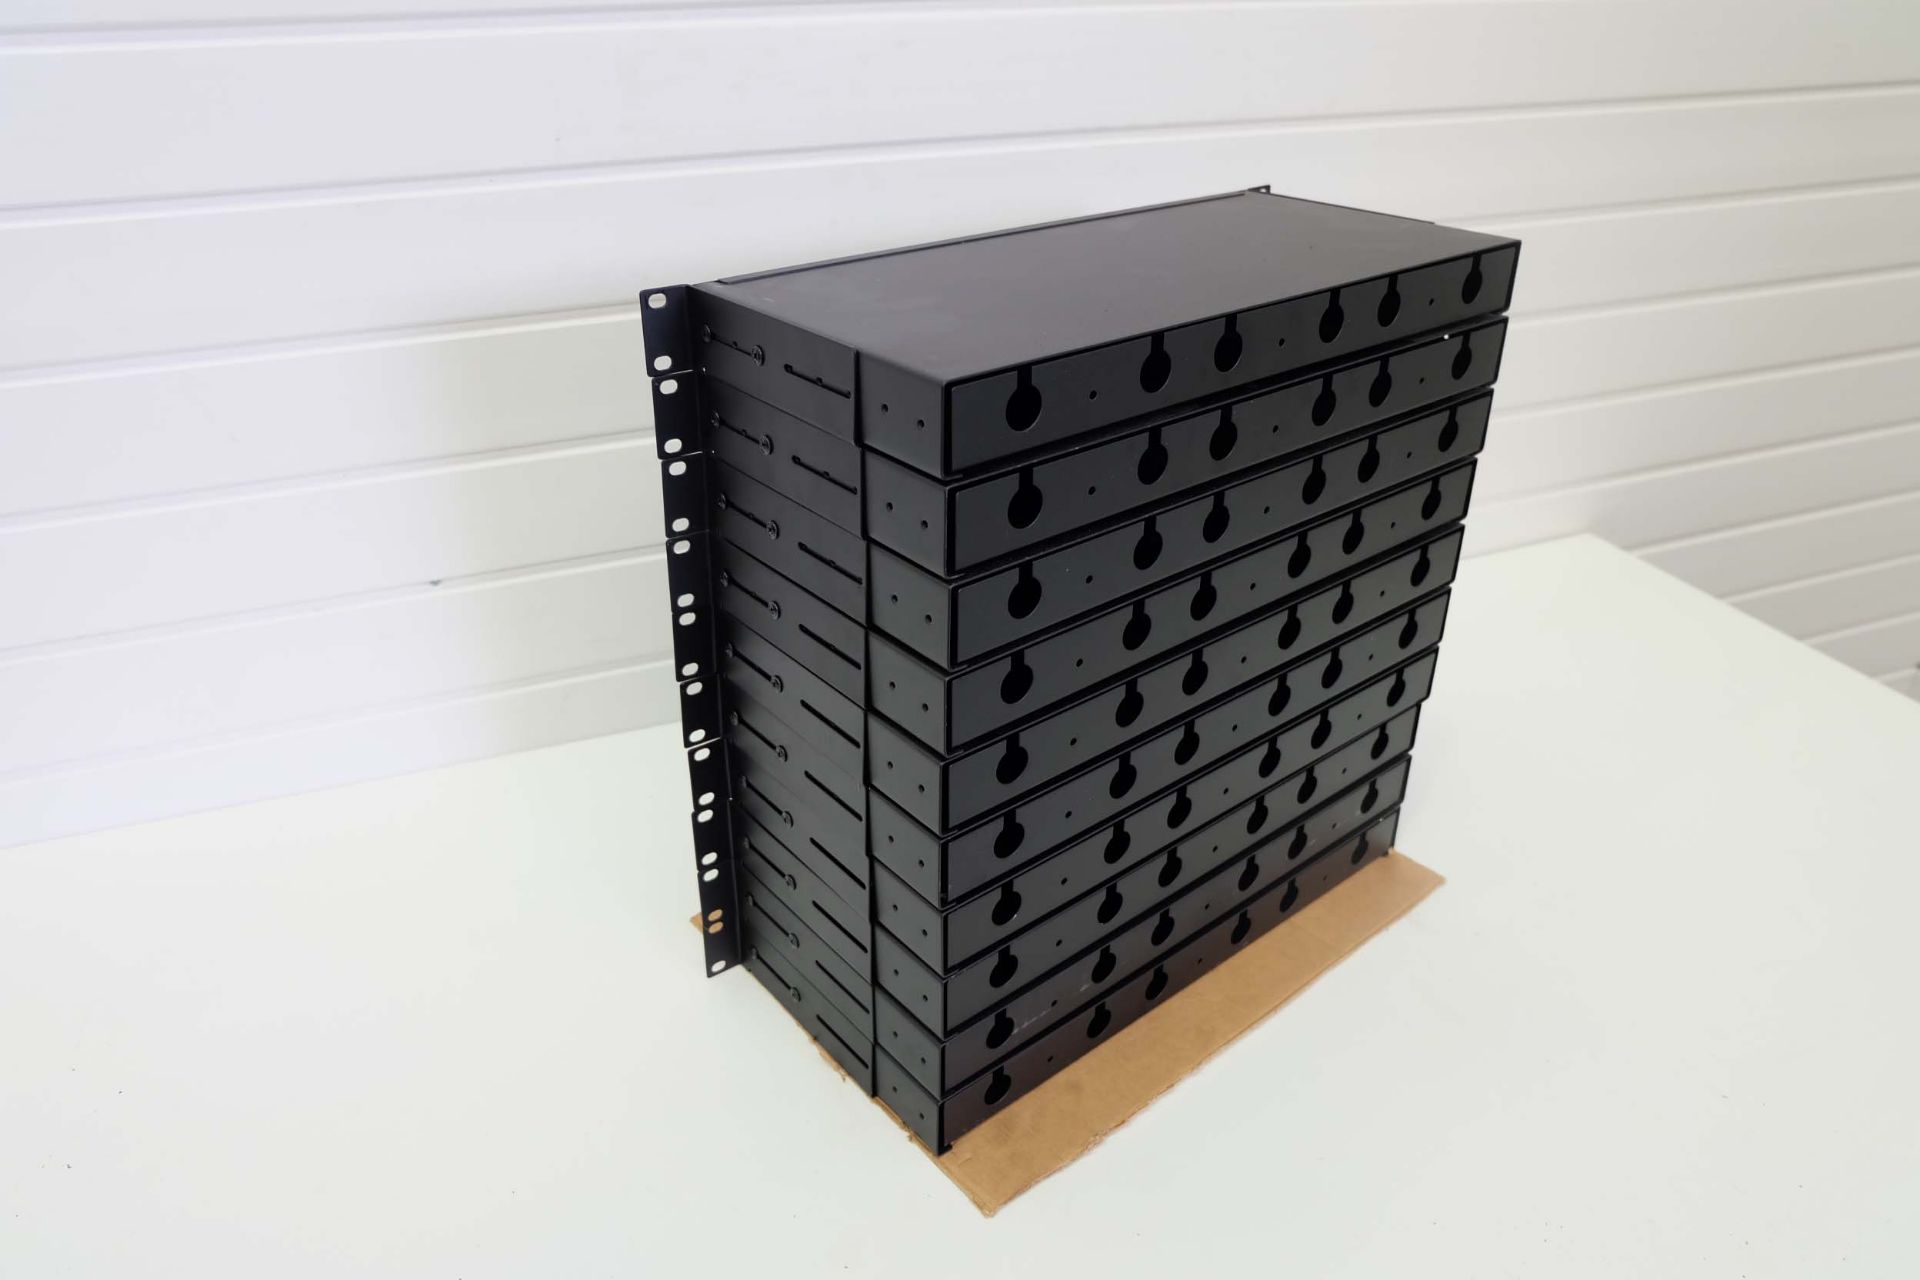 10 x Fibre Optic Cassette Patch Panels. Rack Mountable 1U 19". Port, Duplex LC MPO MTP Fibre Optics. - Image 4 of 4